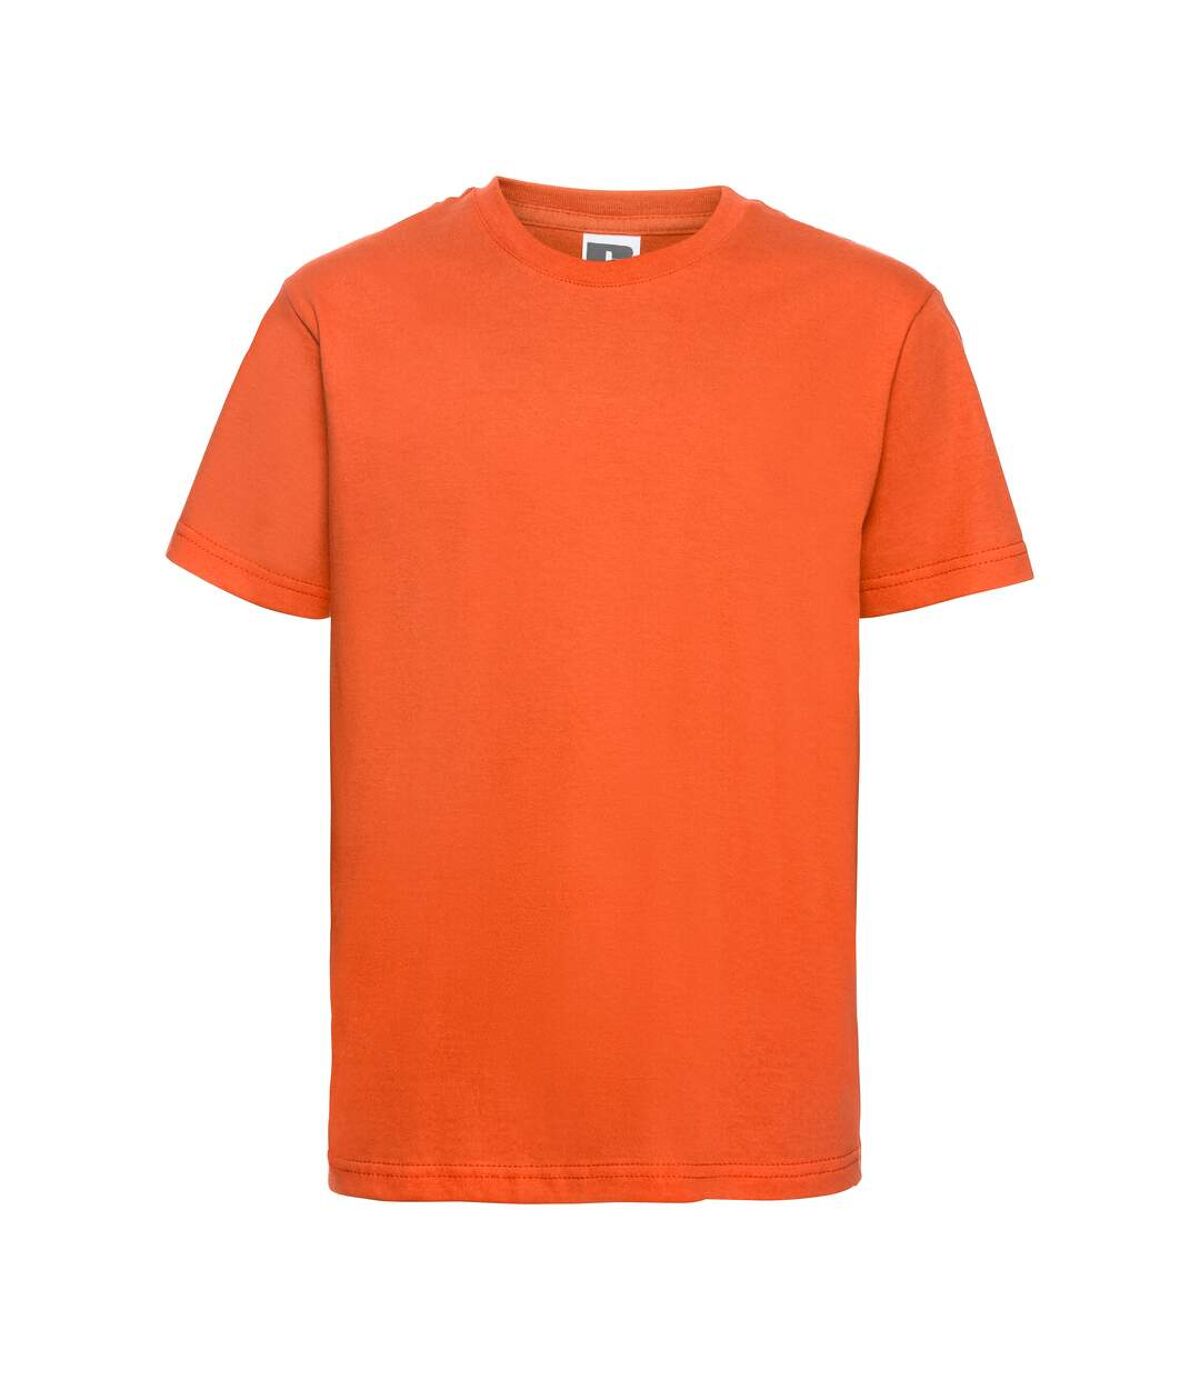 T-shirt à manches courtes Russel pour homme (Orange) - UTBC1515